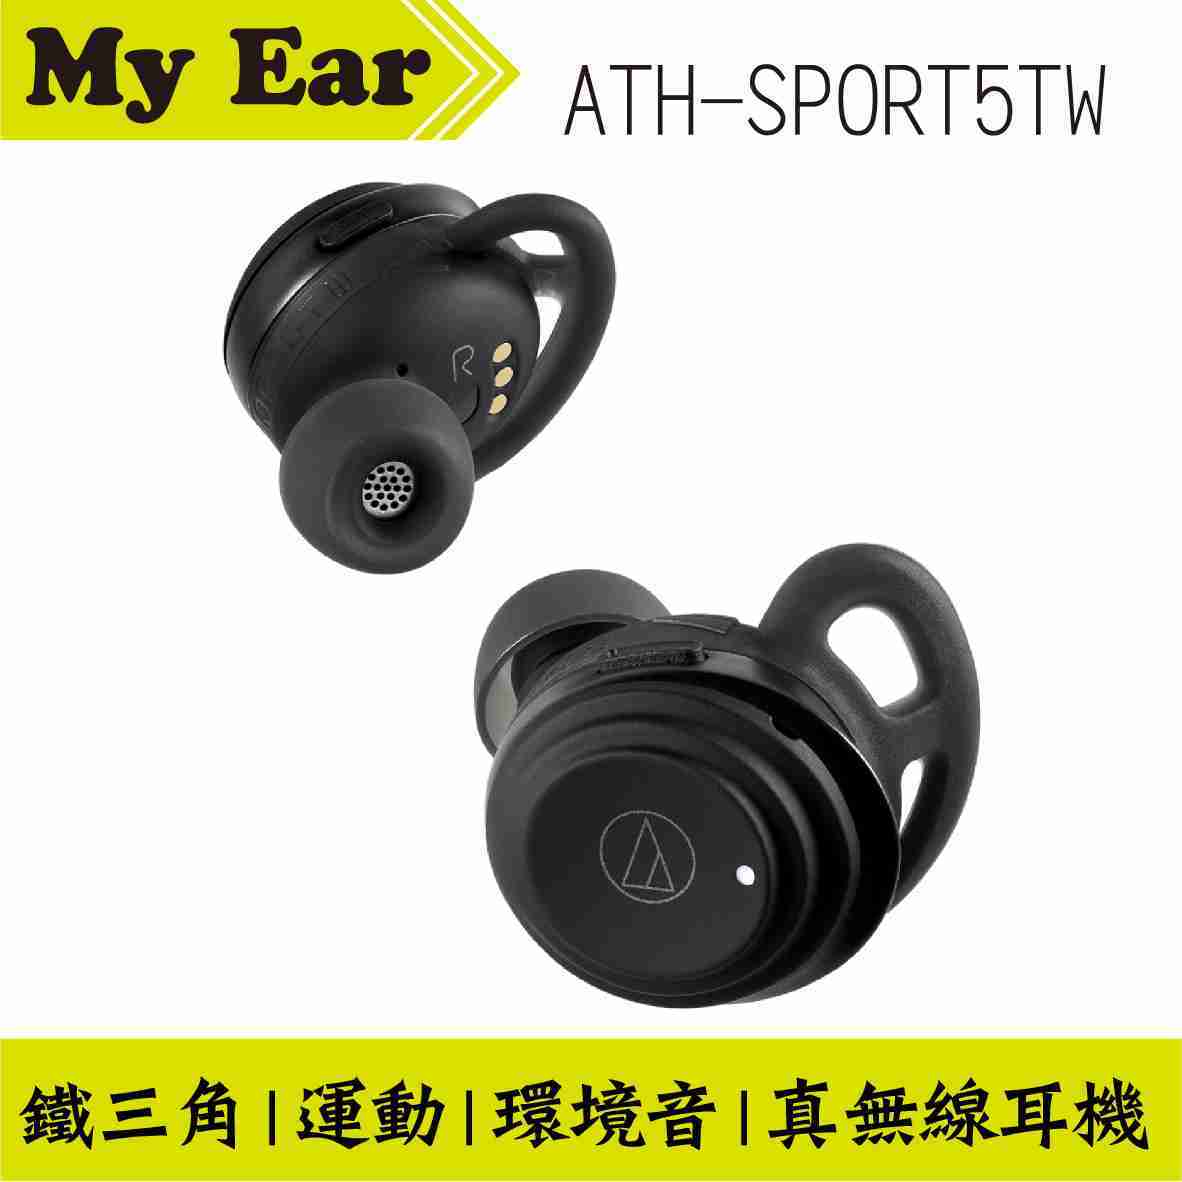 鐵三角 ATH-SPORT5TW 黑色 新款 真無線 耳機 無線 藍芽耳機 運動耳機 | My Ear 耳機專門店